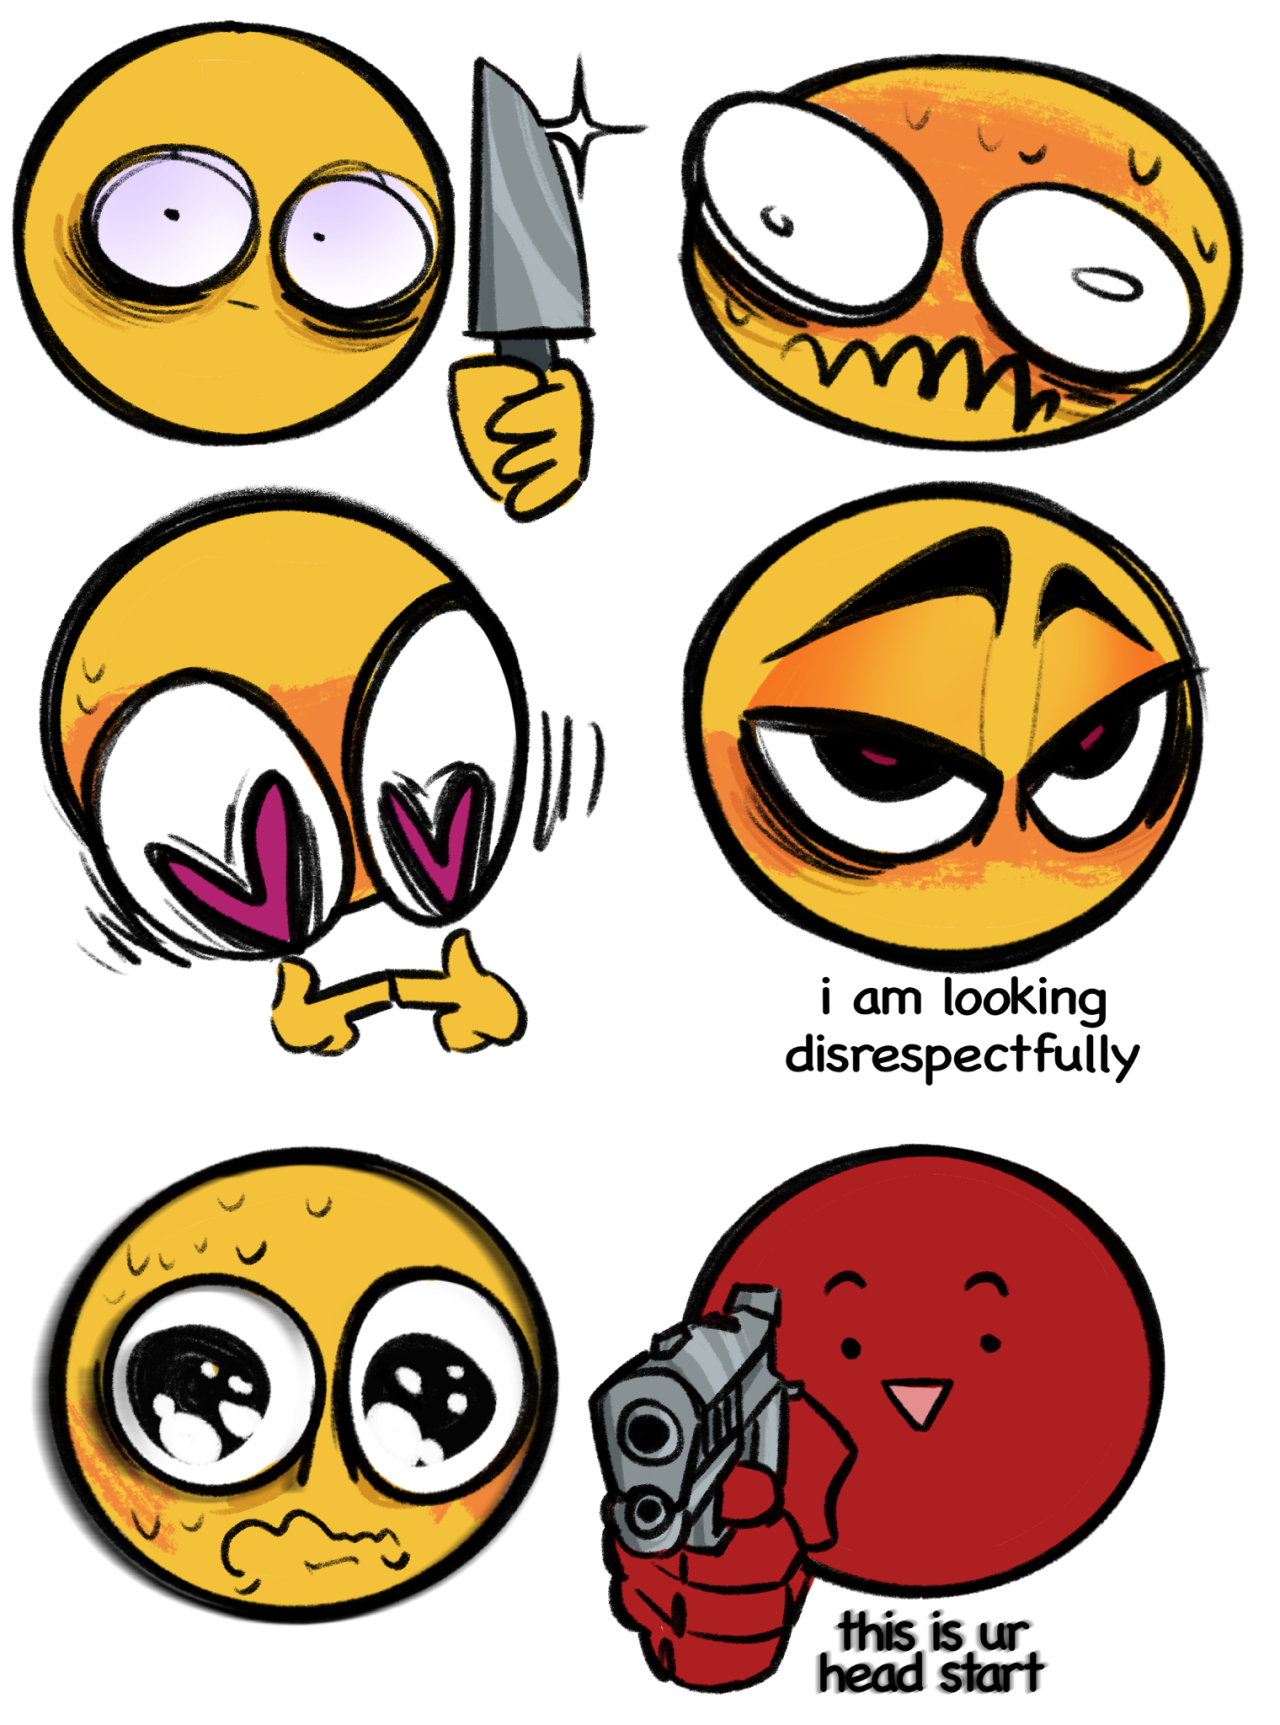 Cursed Emoji Paintings